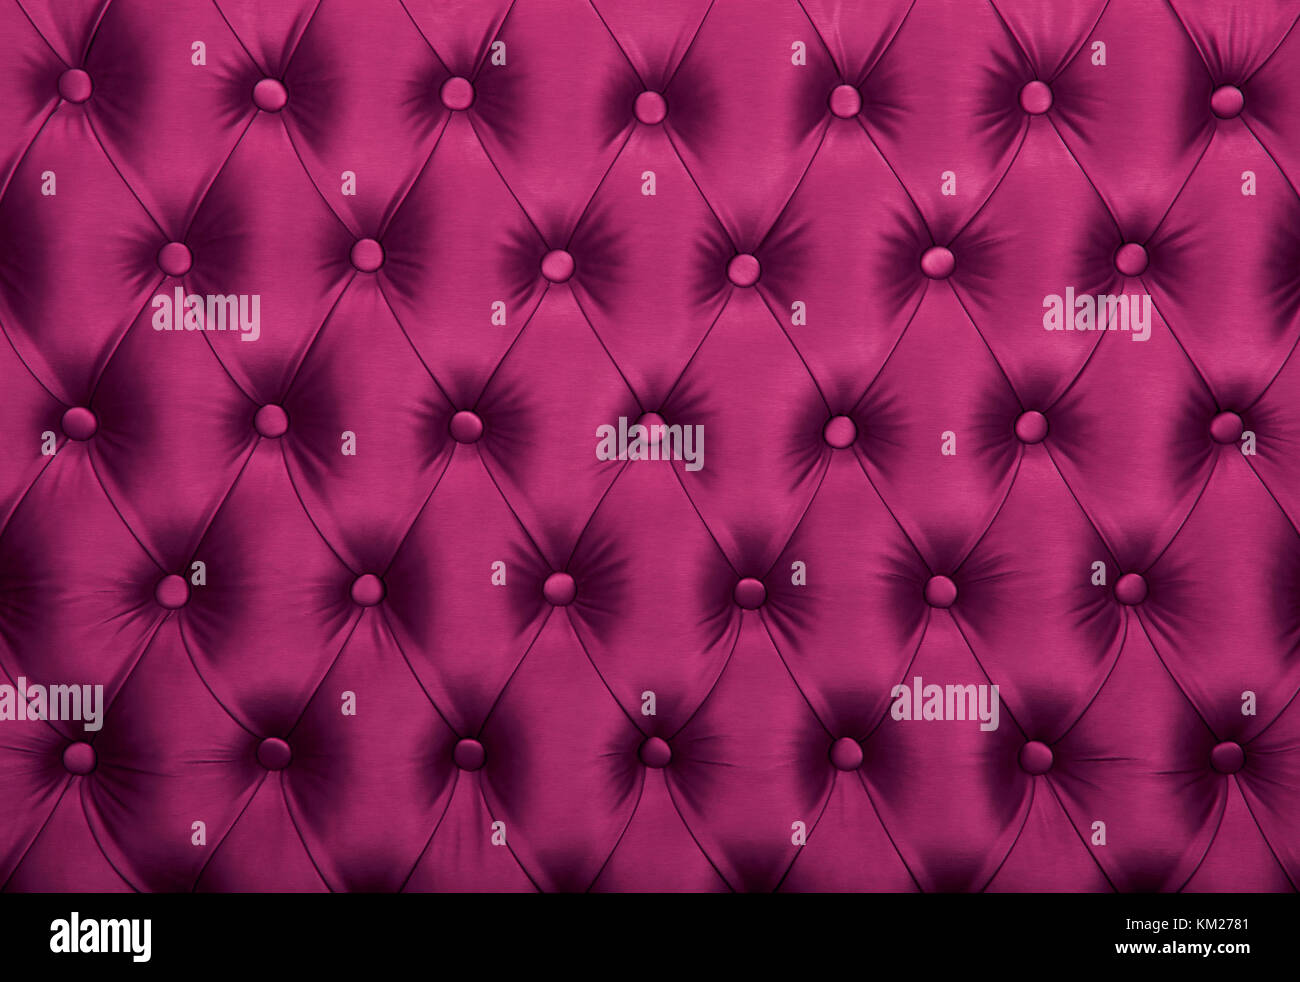 Với nền vải hoa văn màu tím phong cách Chesterfield cổ điển, bạn nhận được sự kết hợp tuyệt vời giữa phong cách cổ điển và màu sắc hiện đại. Nhấn tắt hình ảnh để xem chi tiết tường giấy tráng men màu hồng cùng sự kết hợp hoàn hảo với vải màu tím.